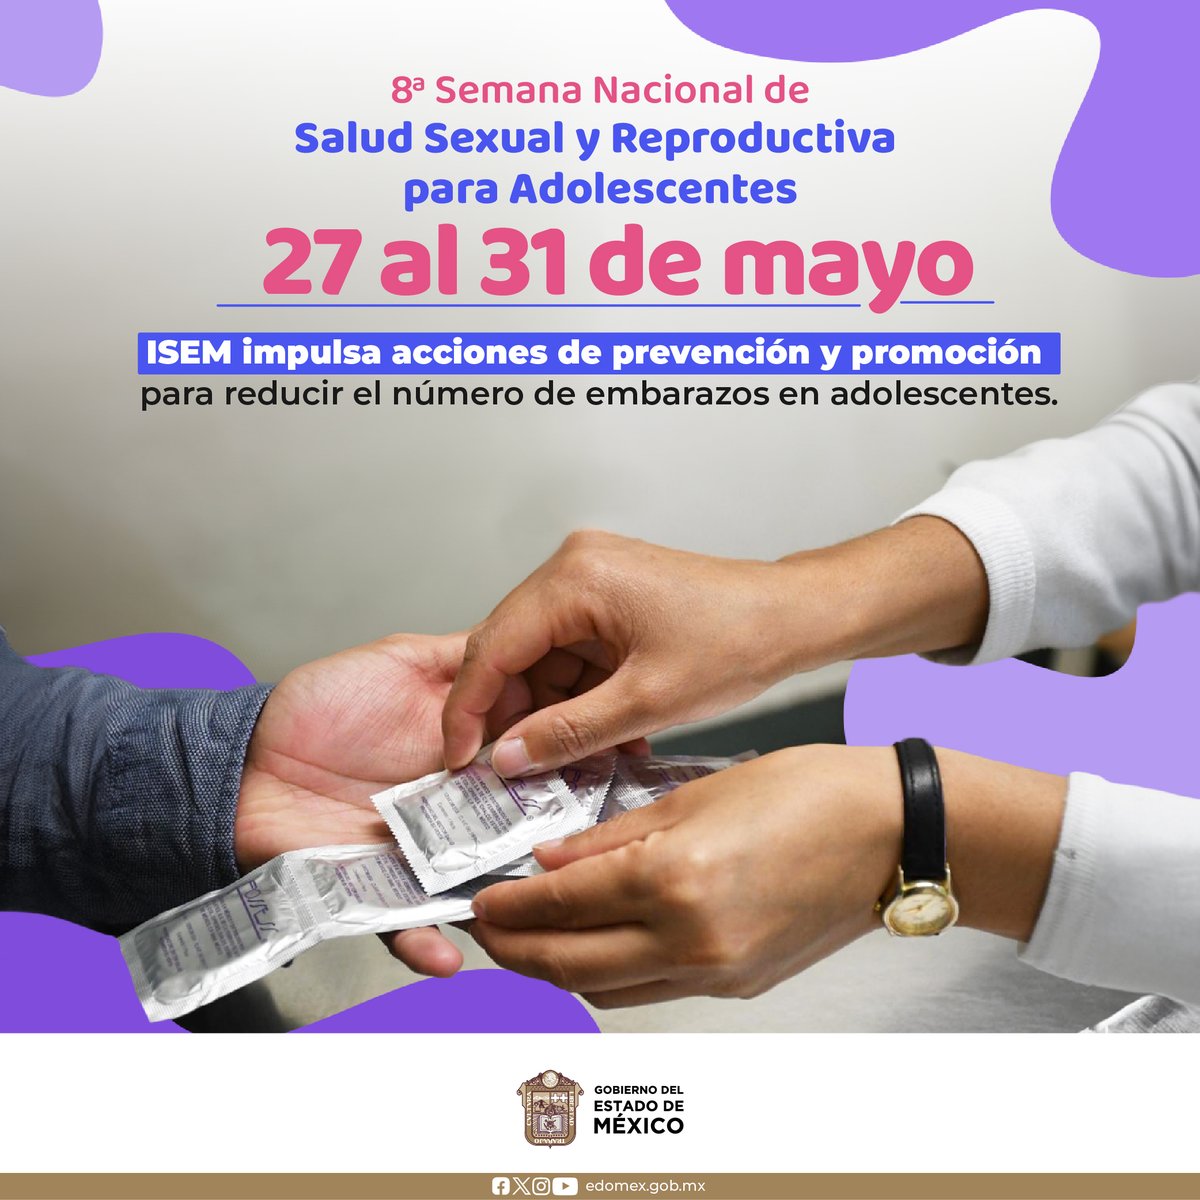 Del 27 al 31 de mayo, se lleva a cabo la 8a Semana Nacional de Salud Sexual y Reproductiva para Adolescentes. El objetivo es fortalecer los servicios gratuitos para este sector, así como difundir acciones preventivas.